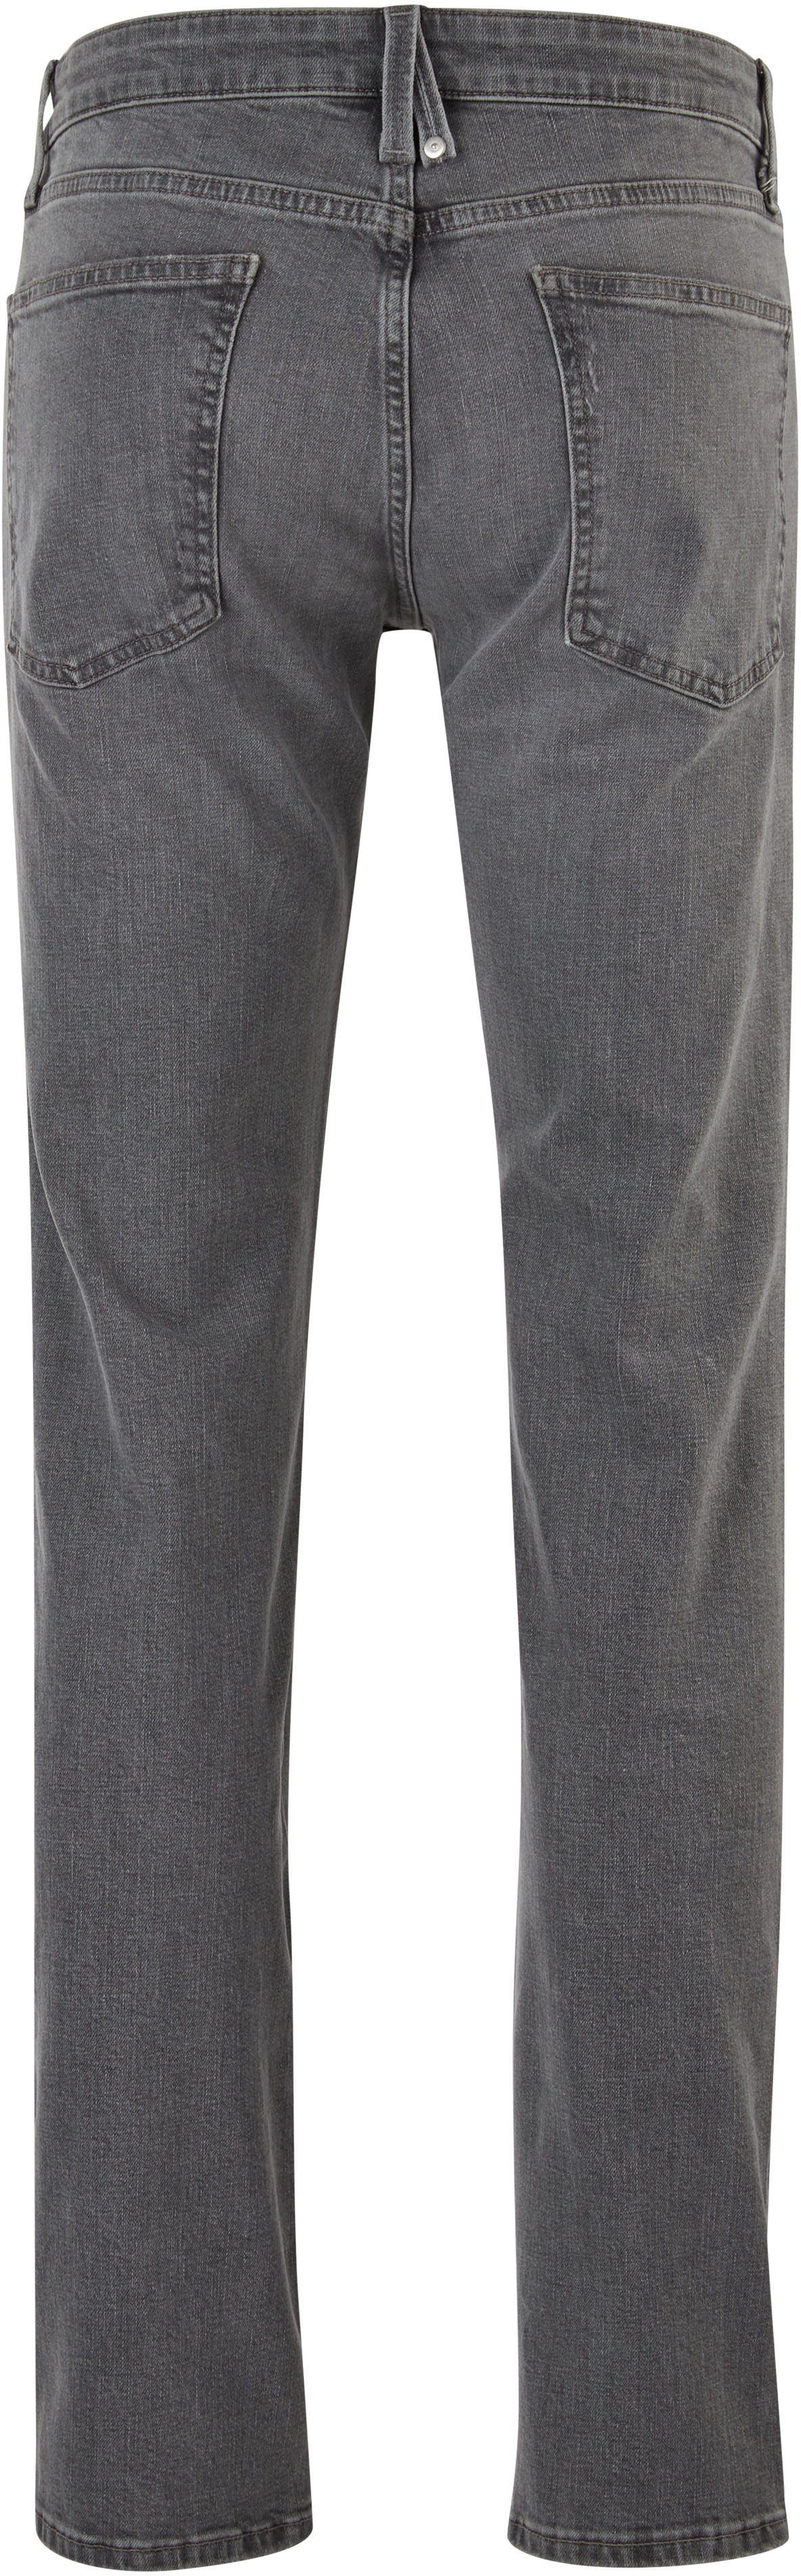 s.Oliver stein-grau mit 5-Pocket-Jeans authentischer Waschung